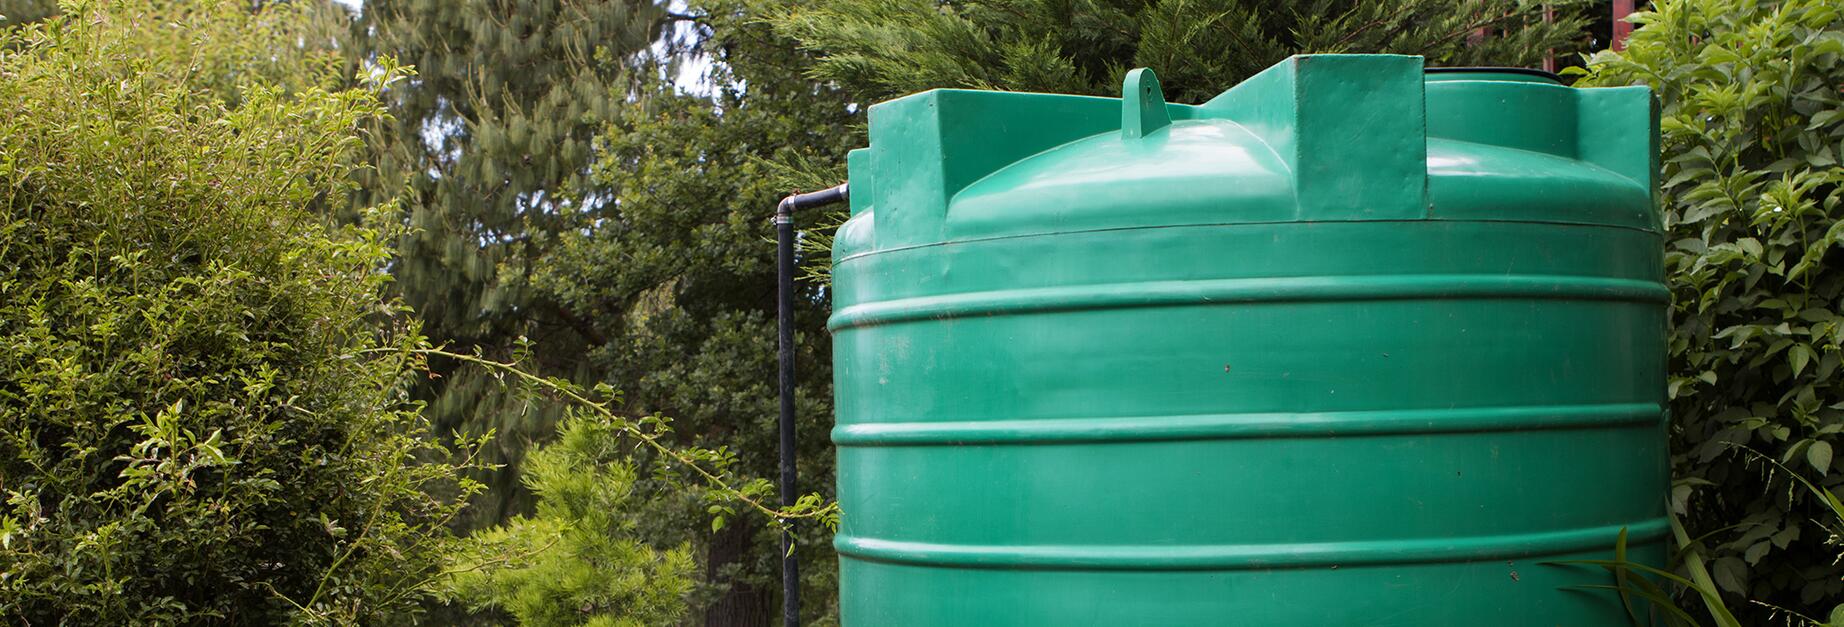 Comment installer un système d'arrosage automatique sur un récupérateur d' eau de pluie ? - Gamm vert